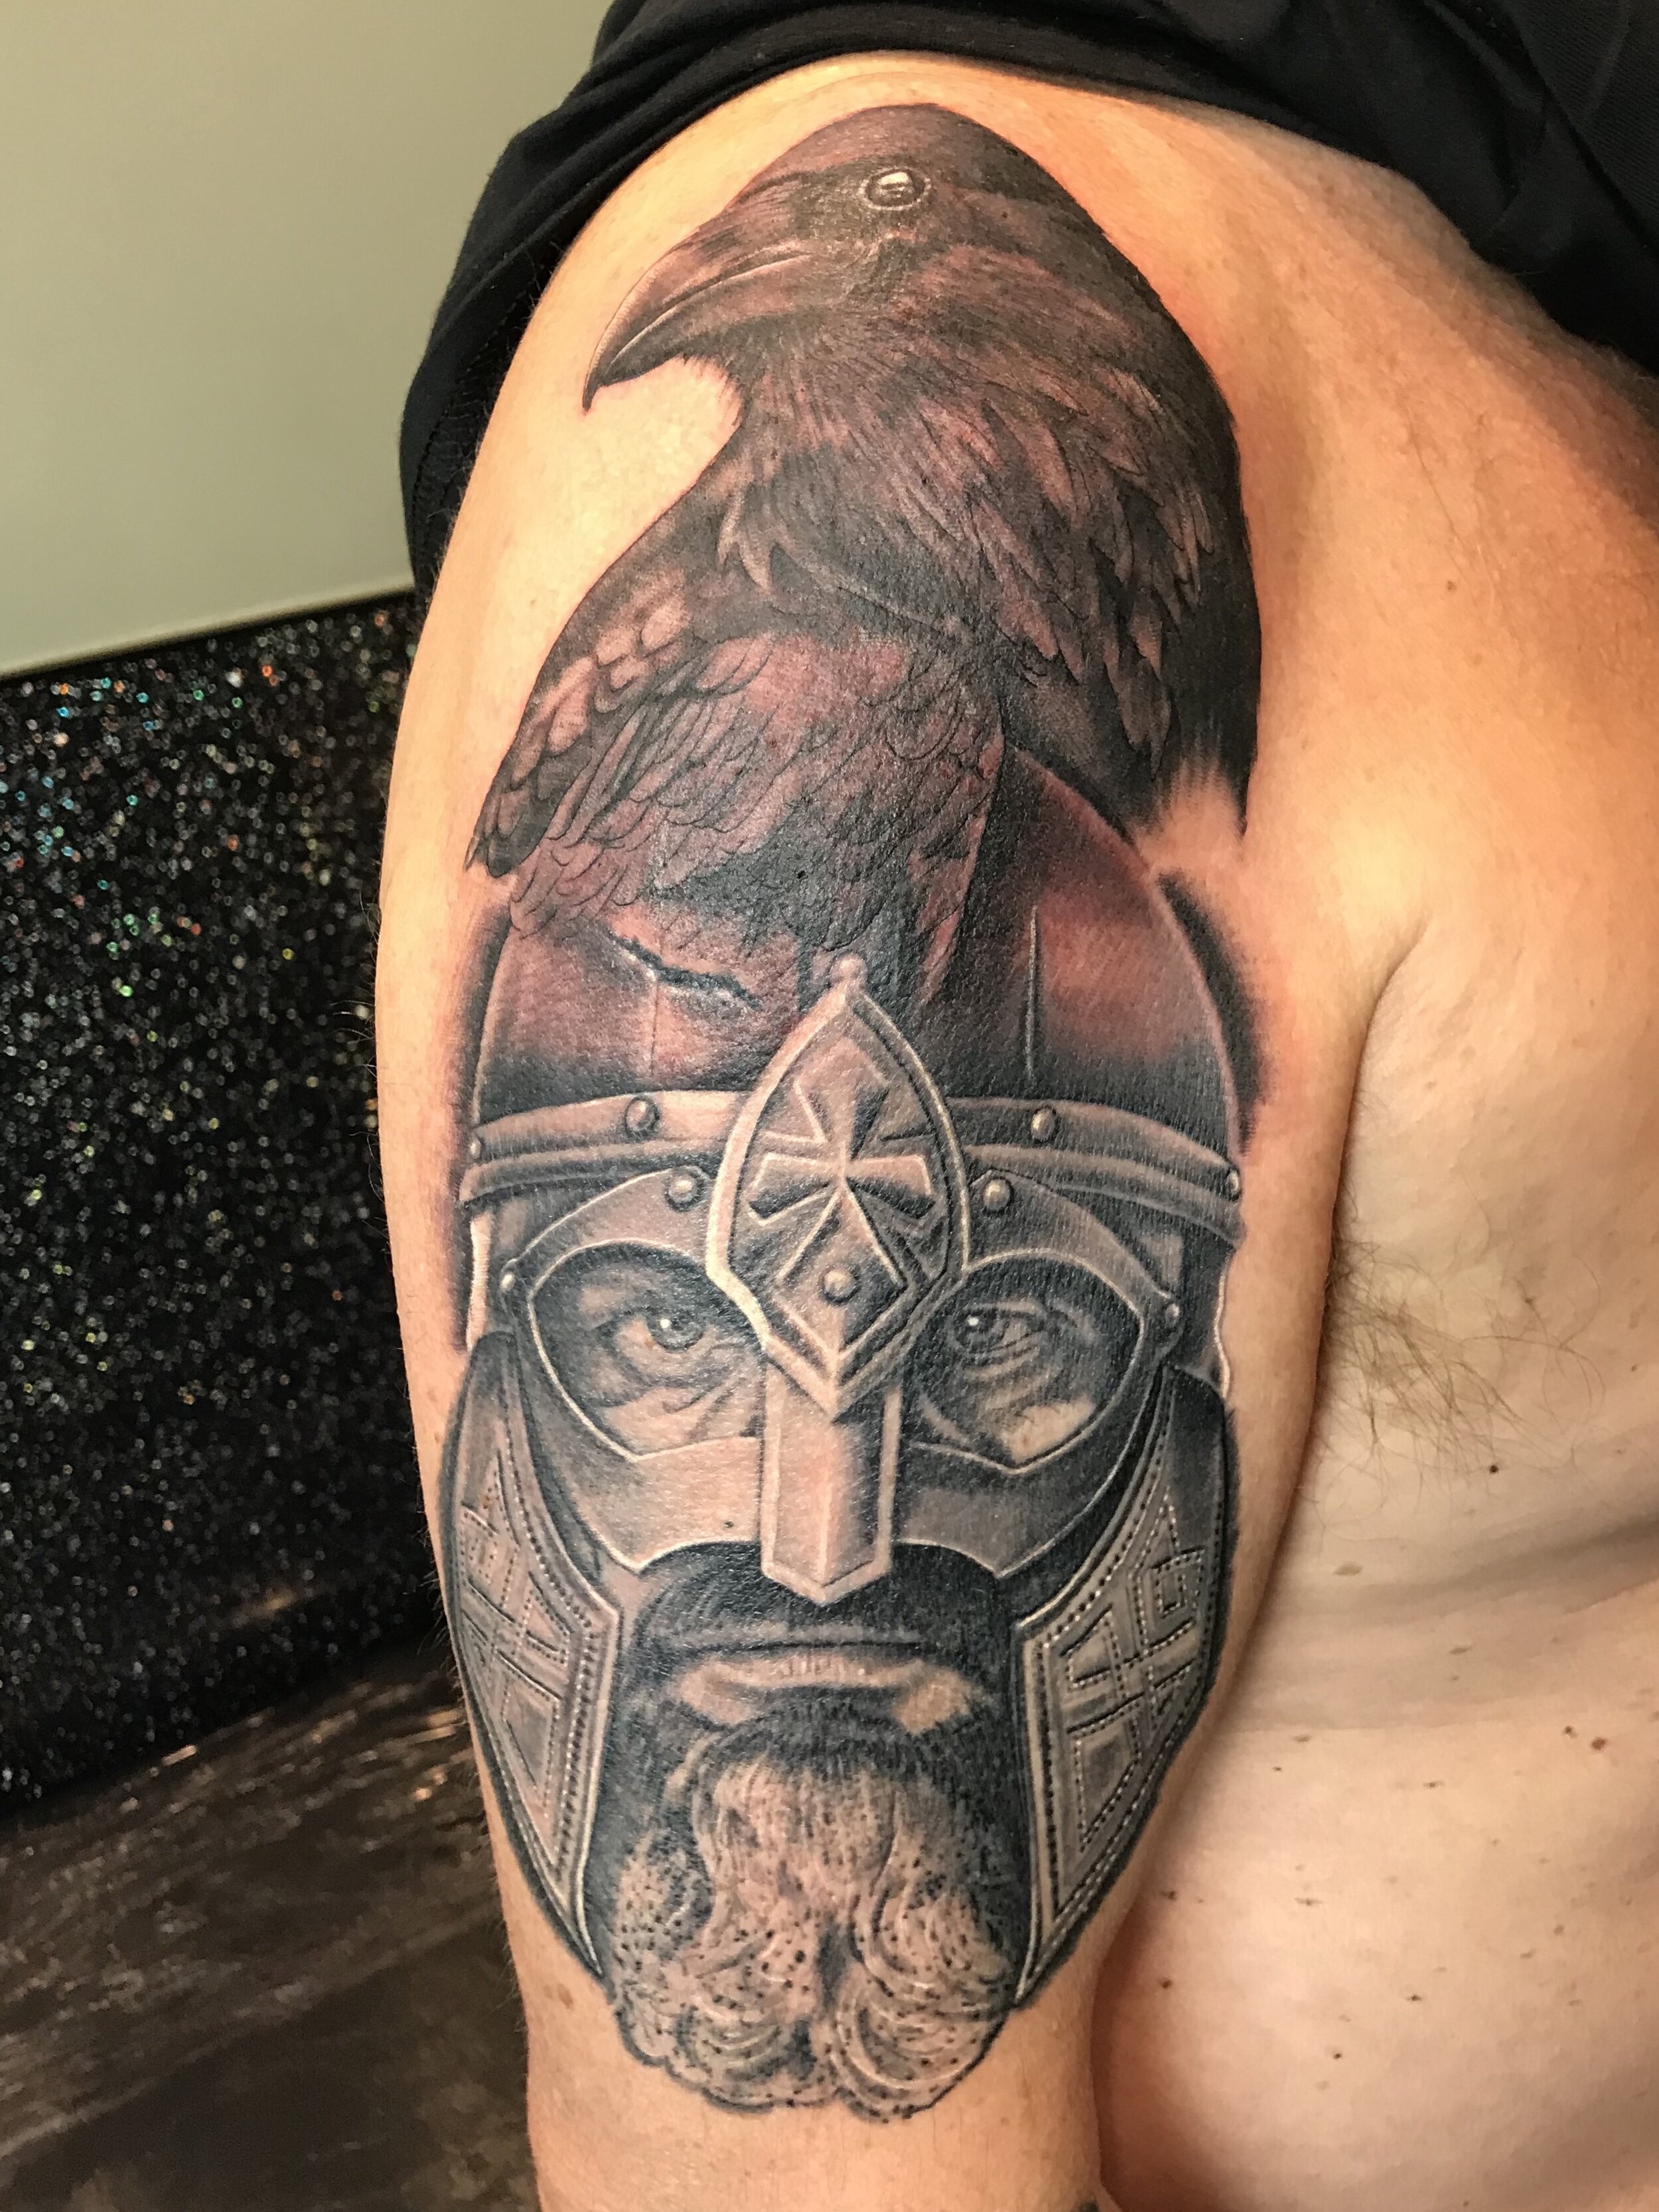 Crusader Cross Christian Warrior Temporary Tattoo Sticker  OhMyTat